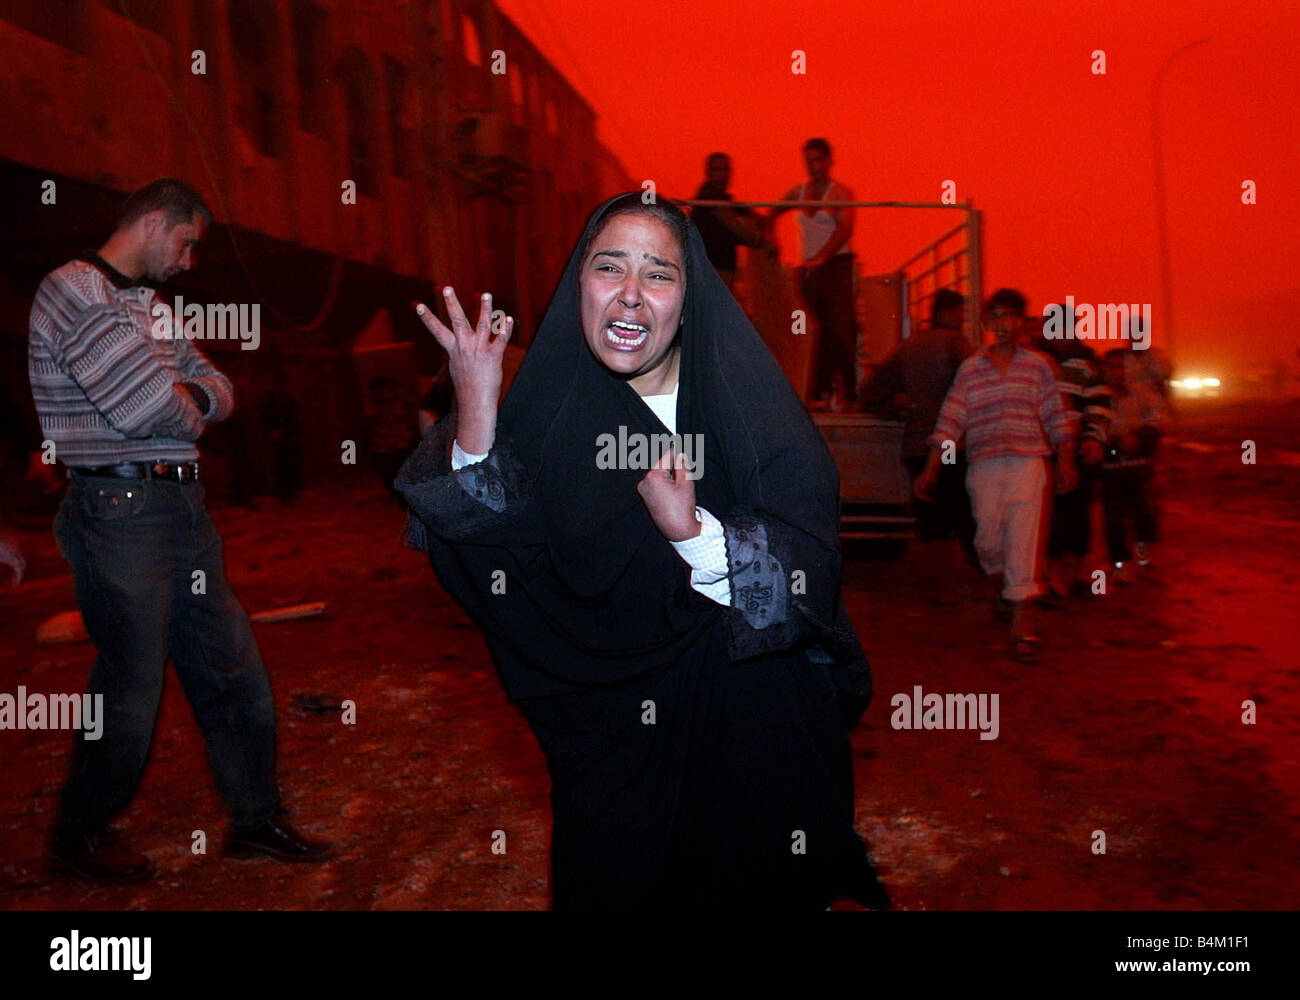 Bagdad im folgenden einen massiven Luftangriff auf dem Gebiet der Al Shahab viele Zivilisten tot unser Bild zeigt verlässt eine unbekannte Frau schreien nach ihrem Ehemann tot in der Explosion gegen den roten glaubte getönten Himmel, verursacht durch die Kombination von schweren Staubstürme und das brennende Öl Feuer rund um Bagdad Stockfoto